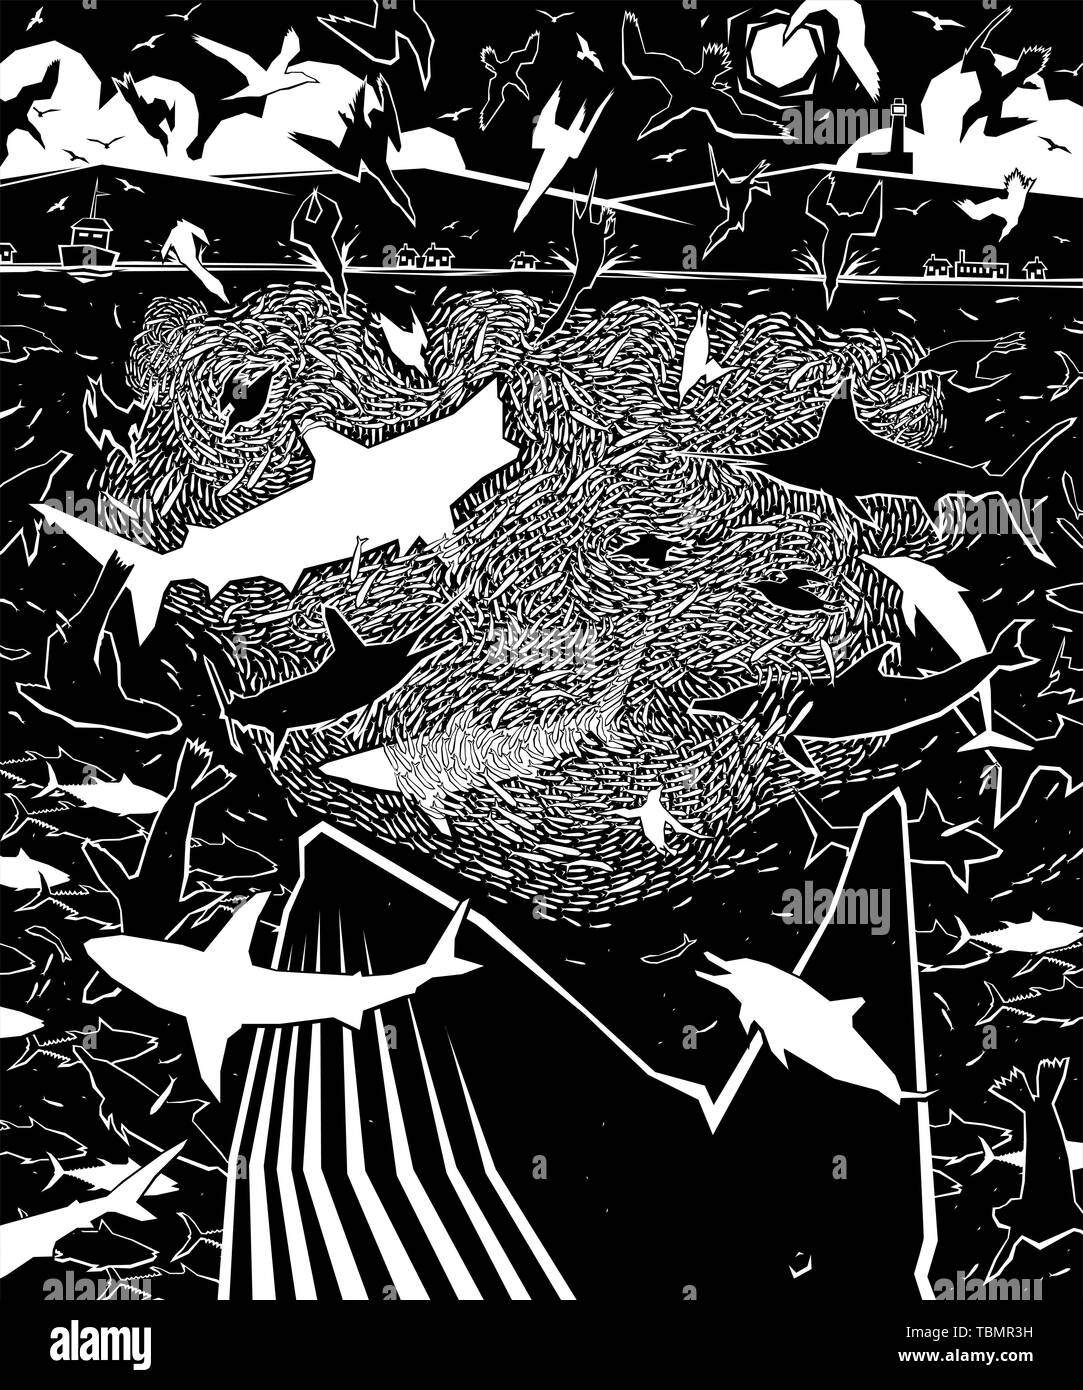 Ilustración vectorial editable de diversos depredadores atacando a un baitball pescado en el mar Ilustración del Vector